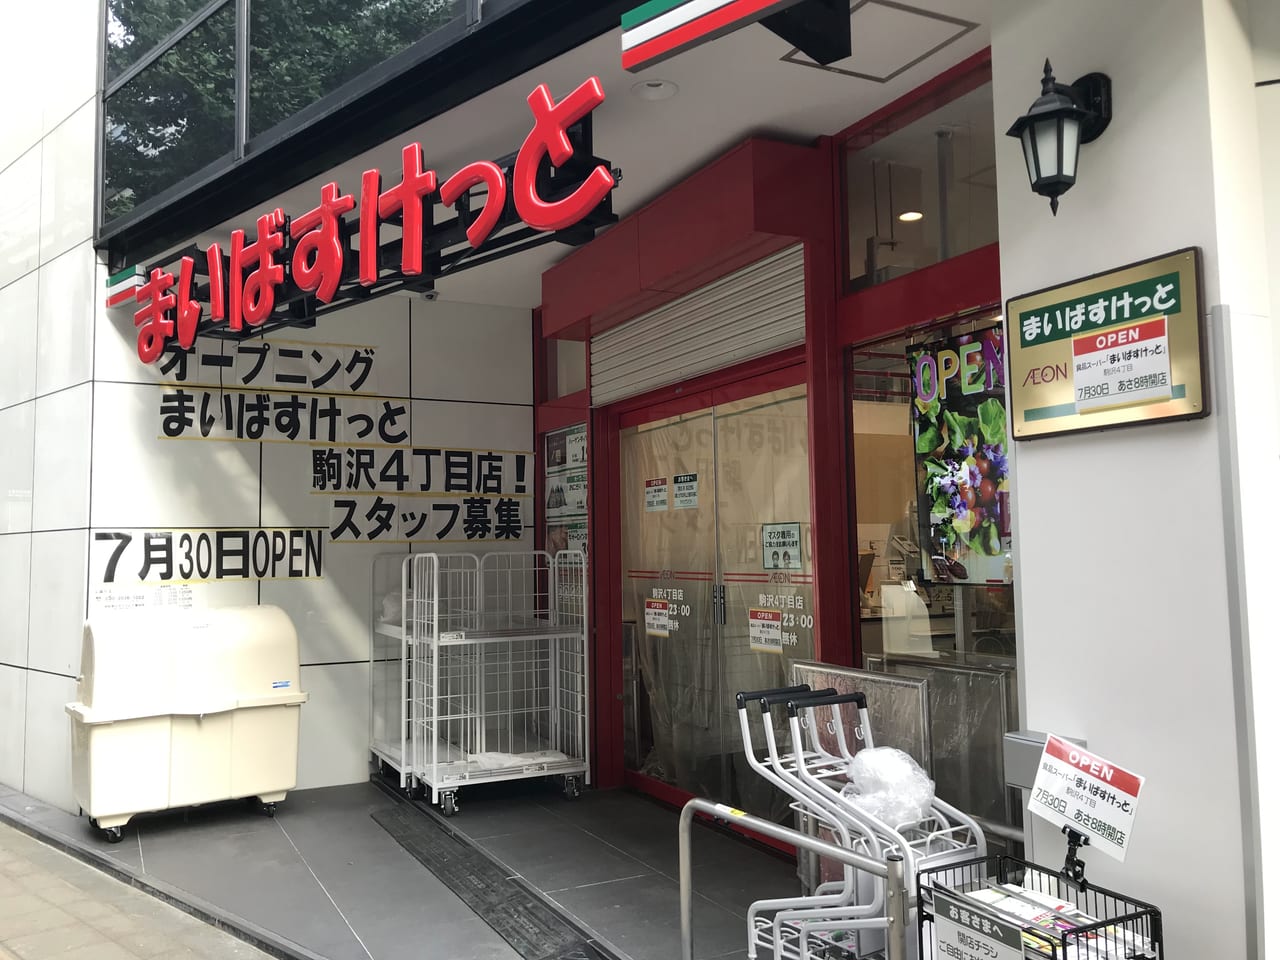 世田谷区まいばすけっと駒沢4丁目店が2021年7月30日オープンします。